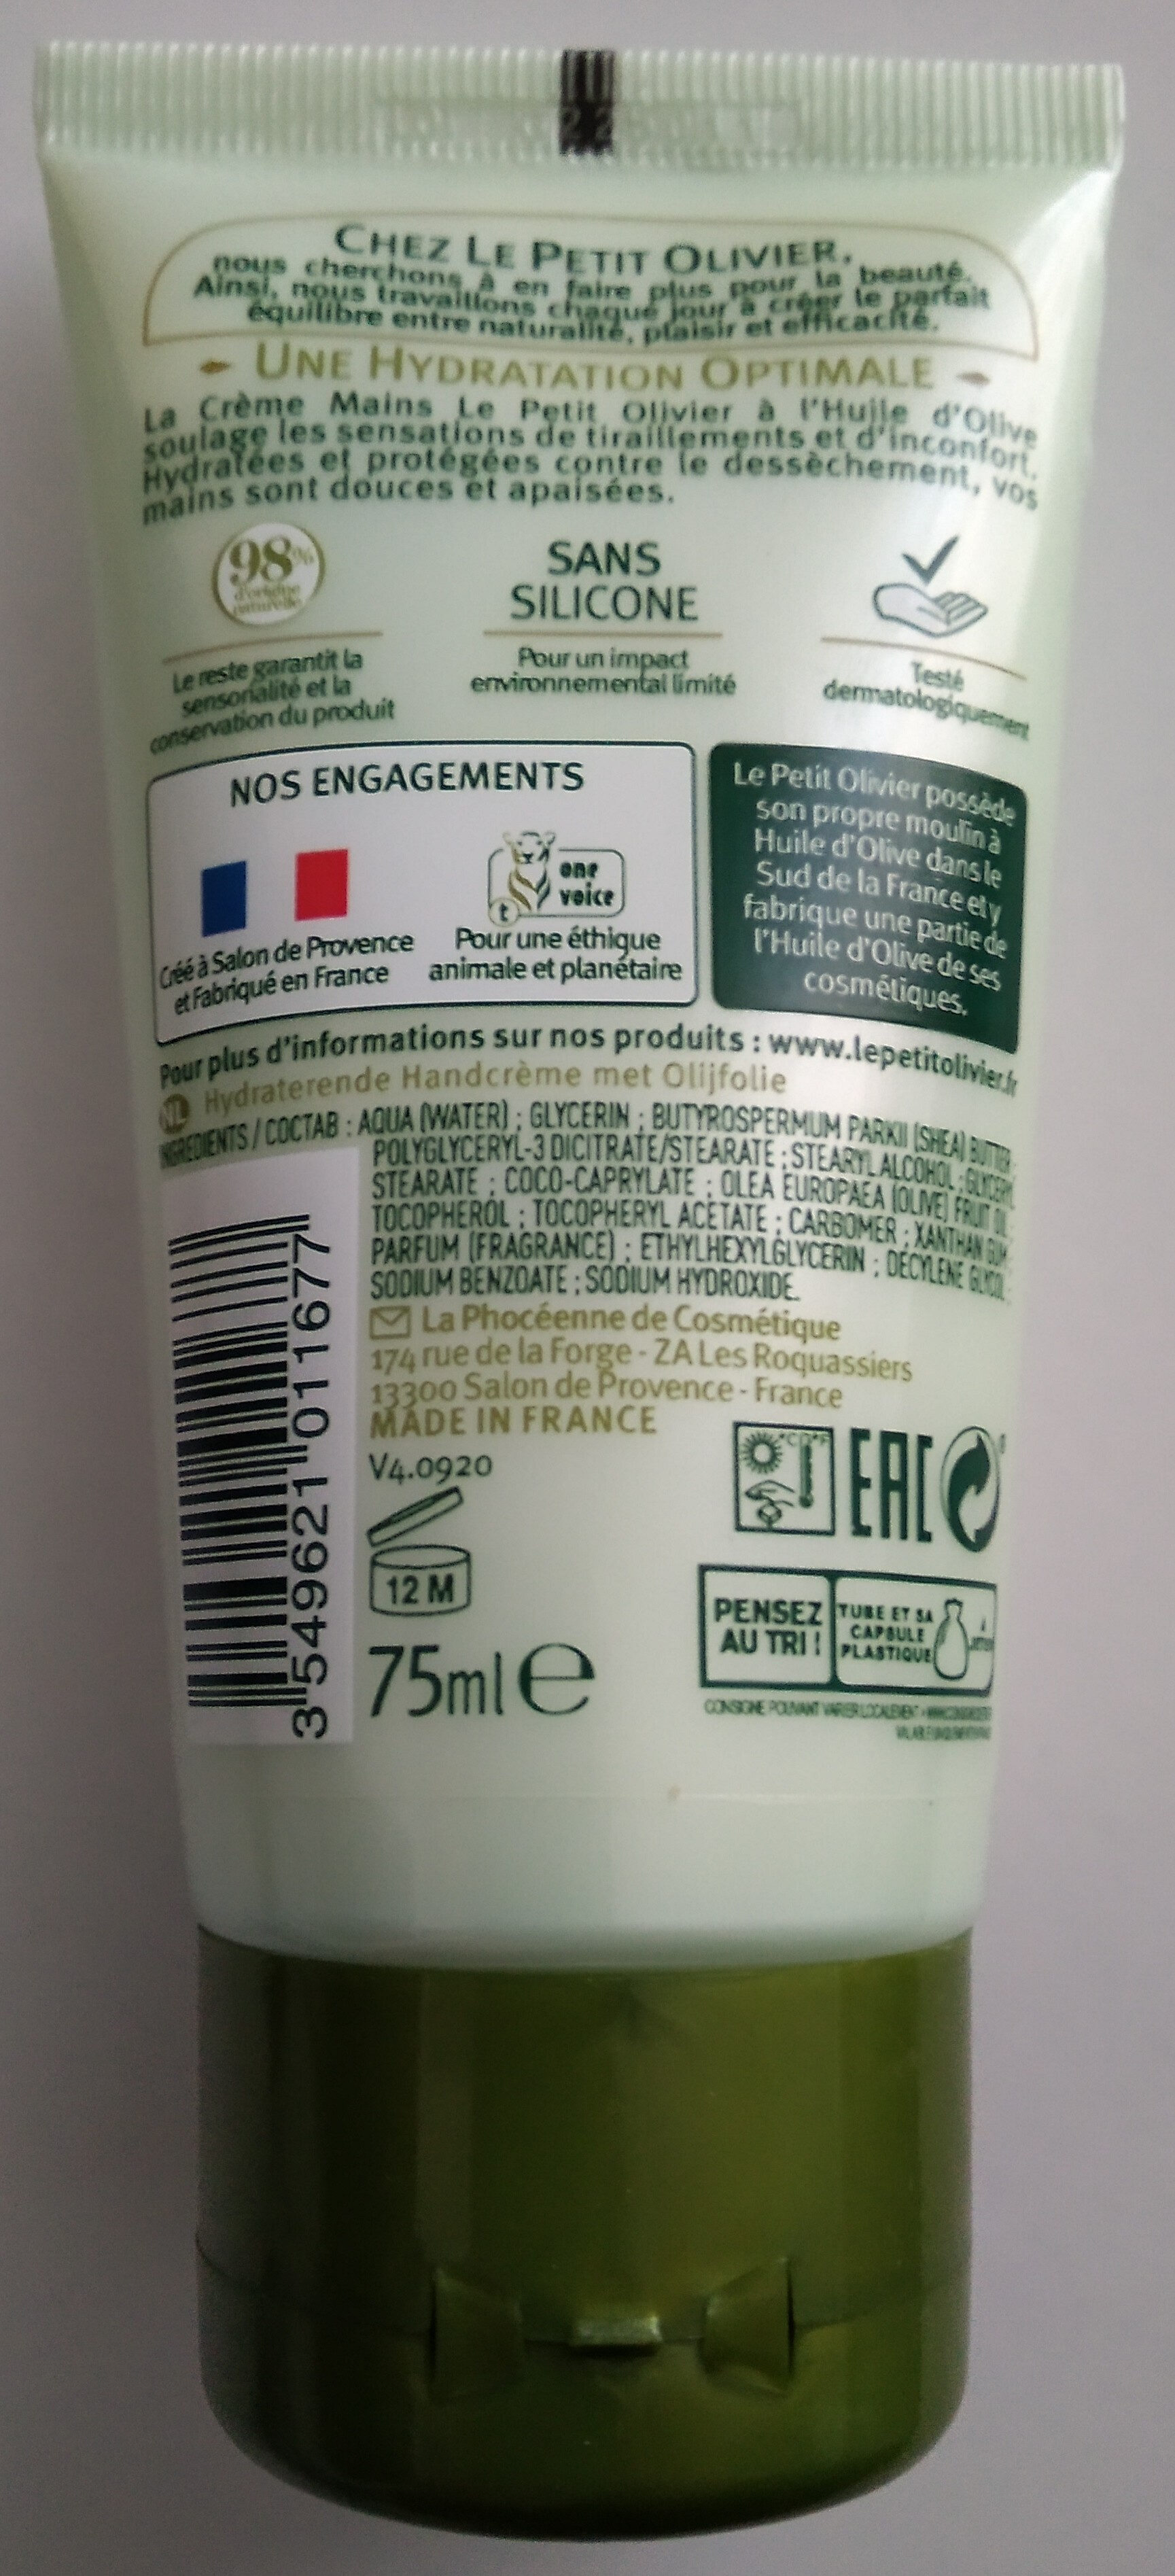 Crème mains hydratante à l'huile d'olive - Produto - fr